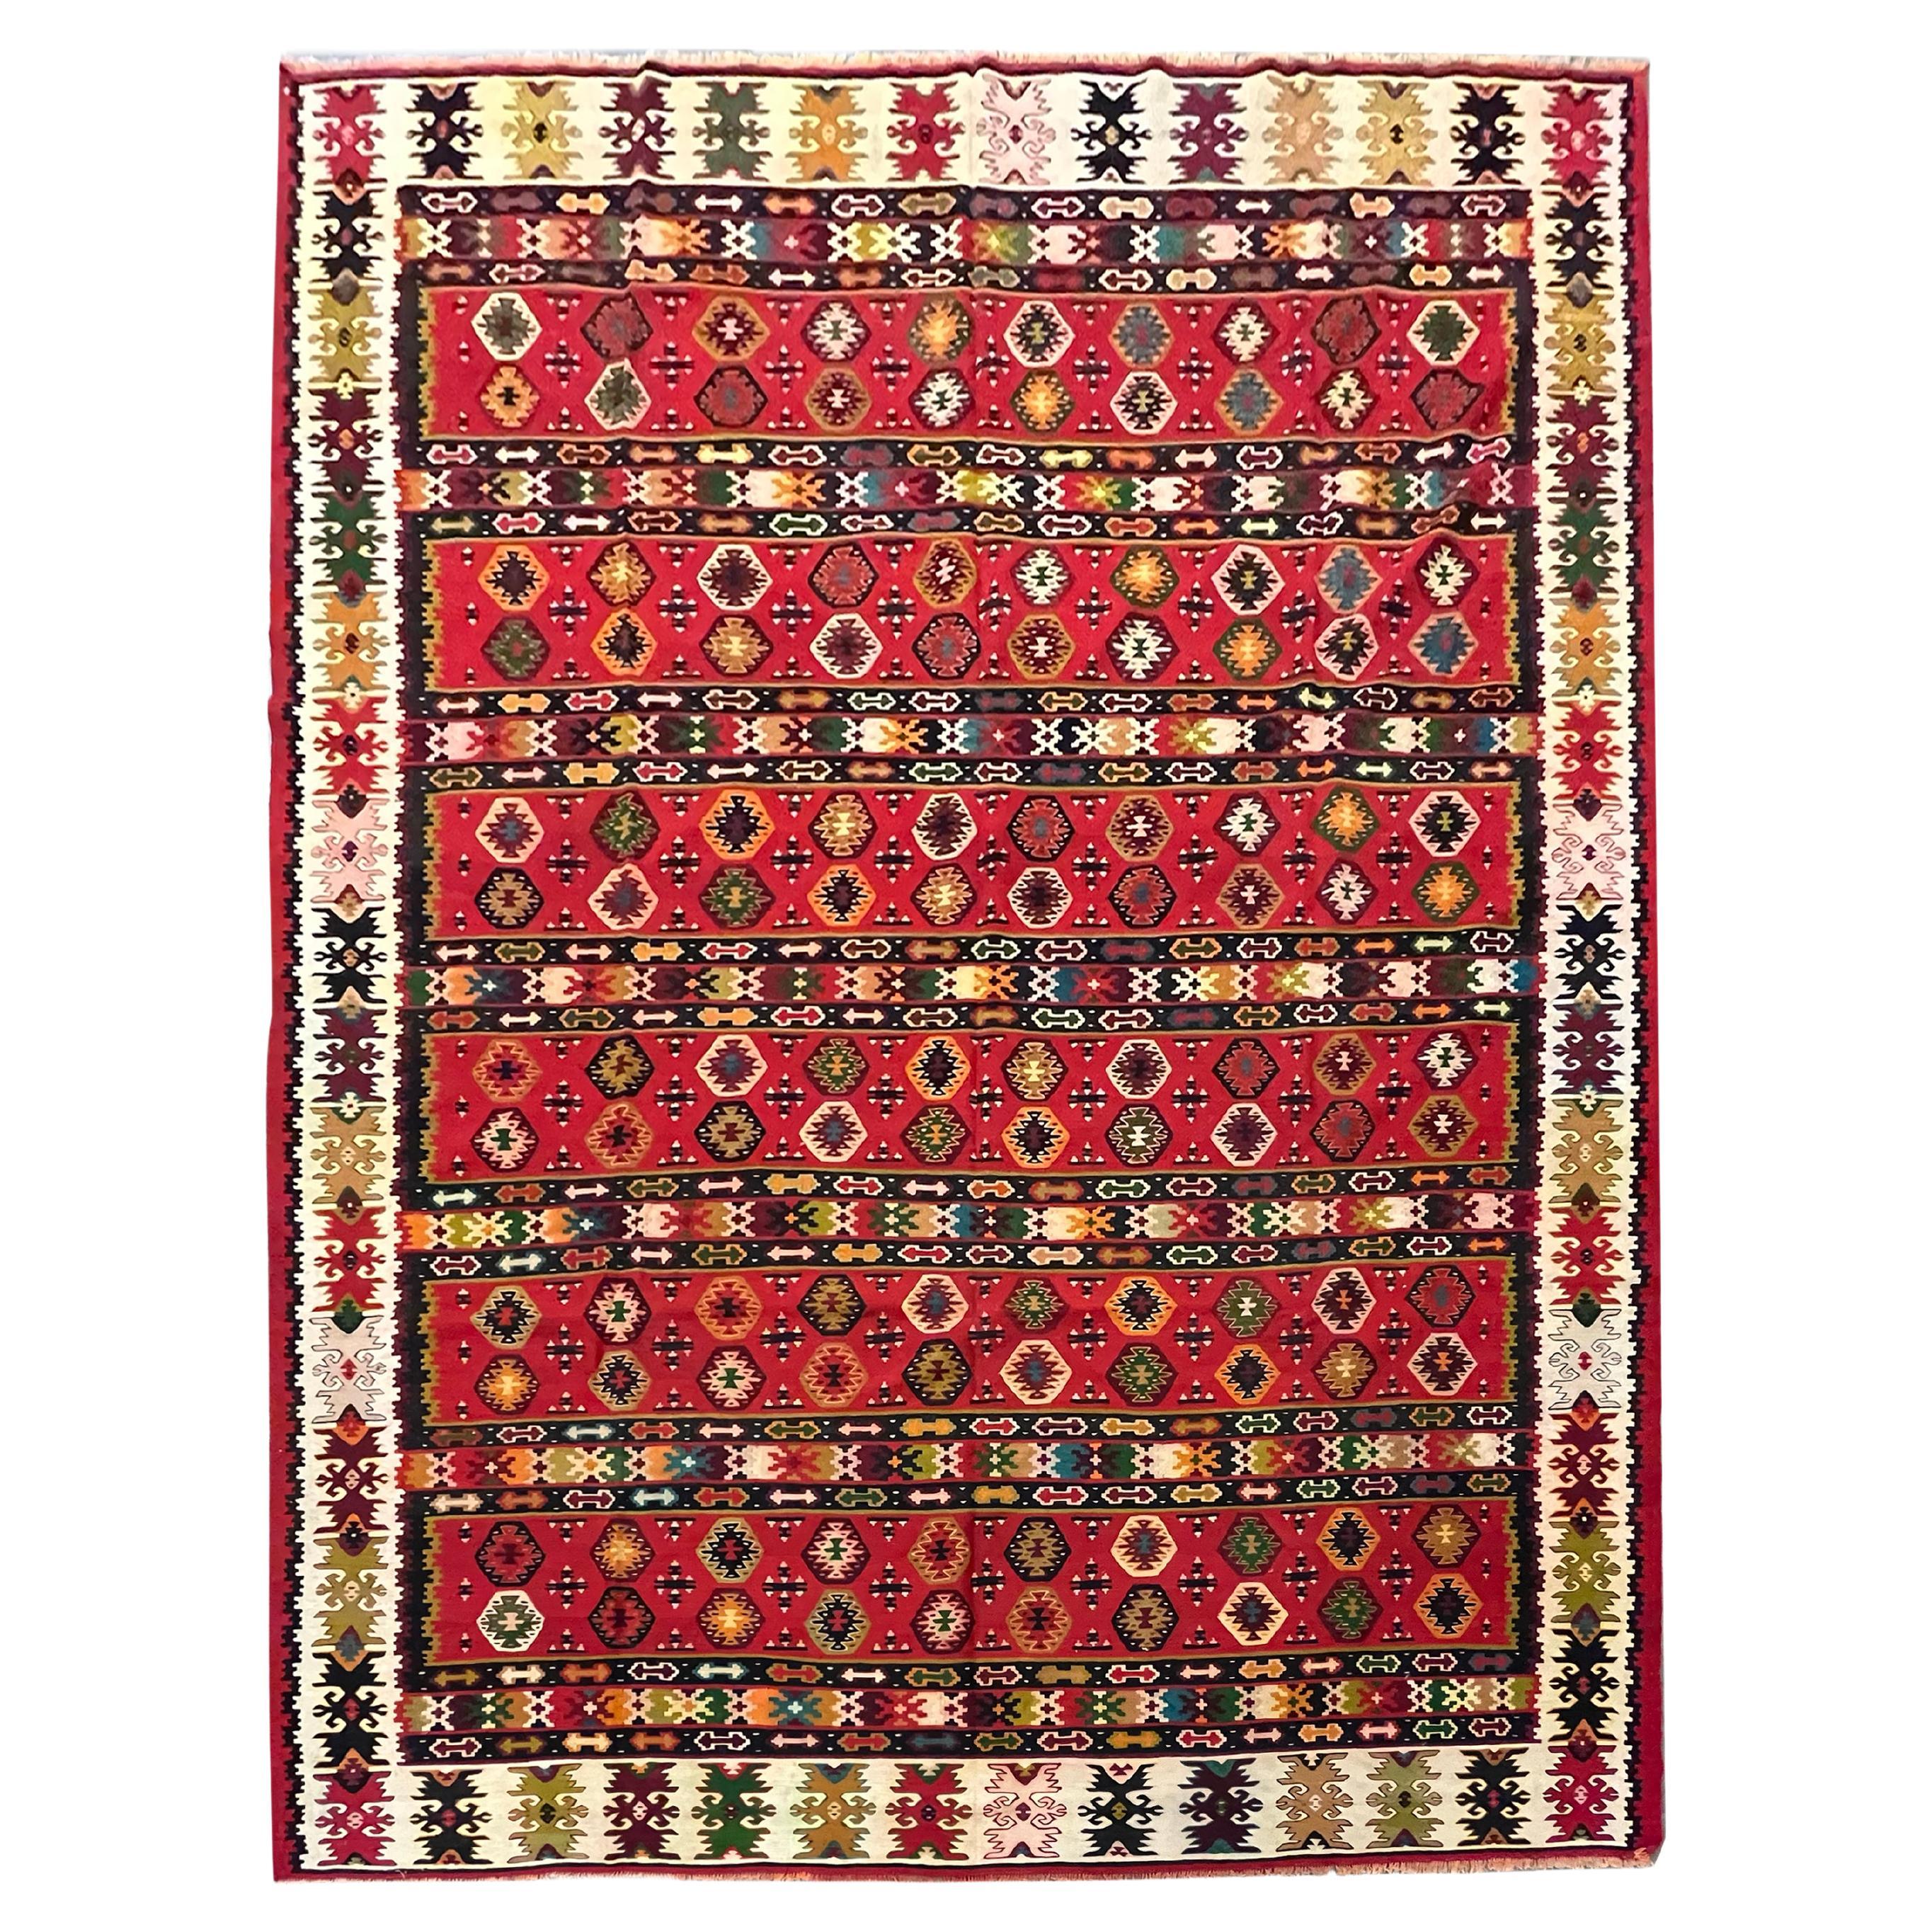 Antiker gestreifter türkischer Kelim-Teppich, handgewebter, flachgewebter Kelim-Teppich